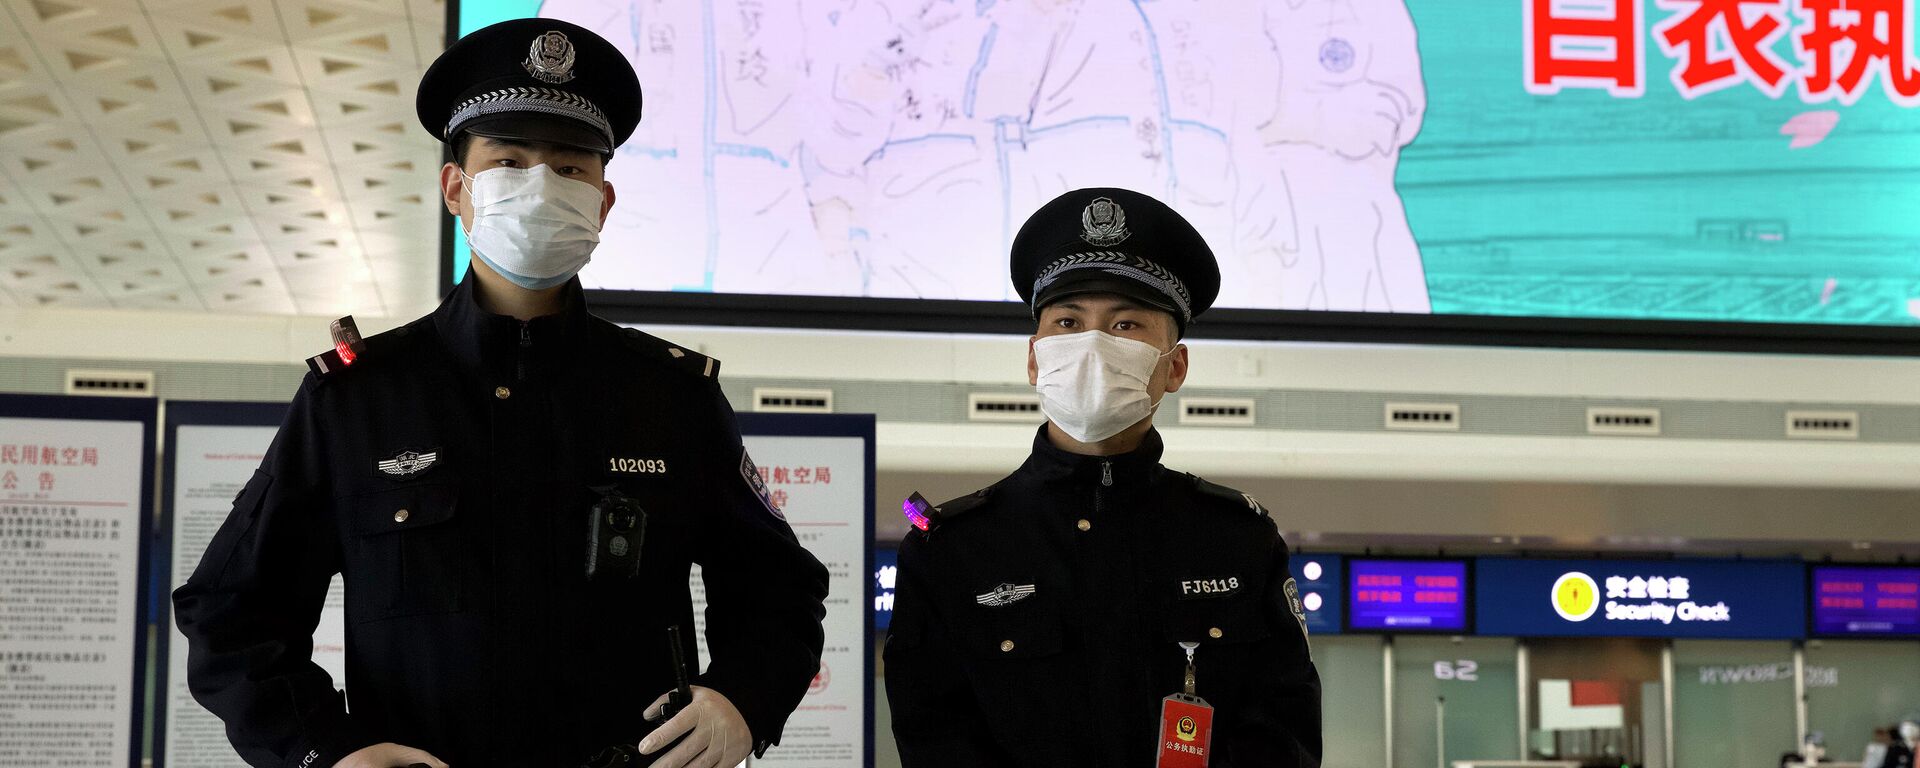 Agentes de la Policía en el Aeropuerto Internacional de Wuhan (China) - Sputnik Mundo, 1920, 05.11.2021